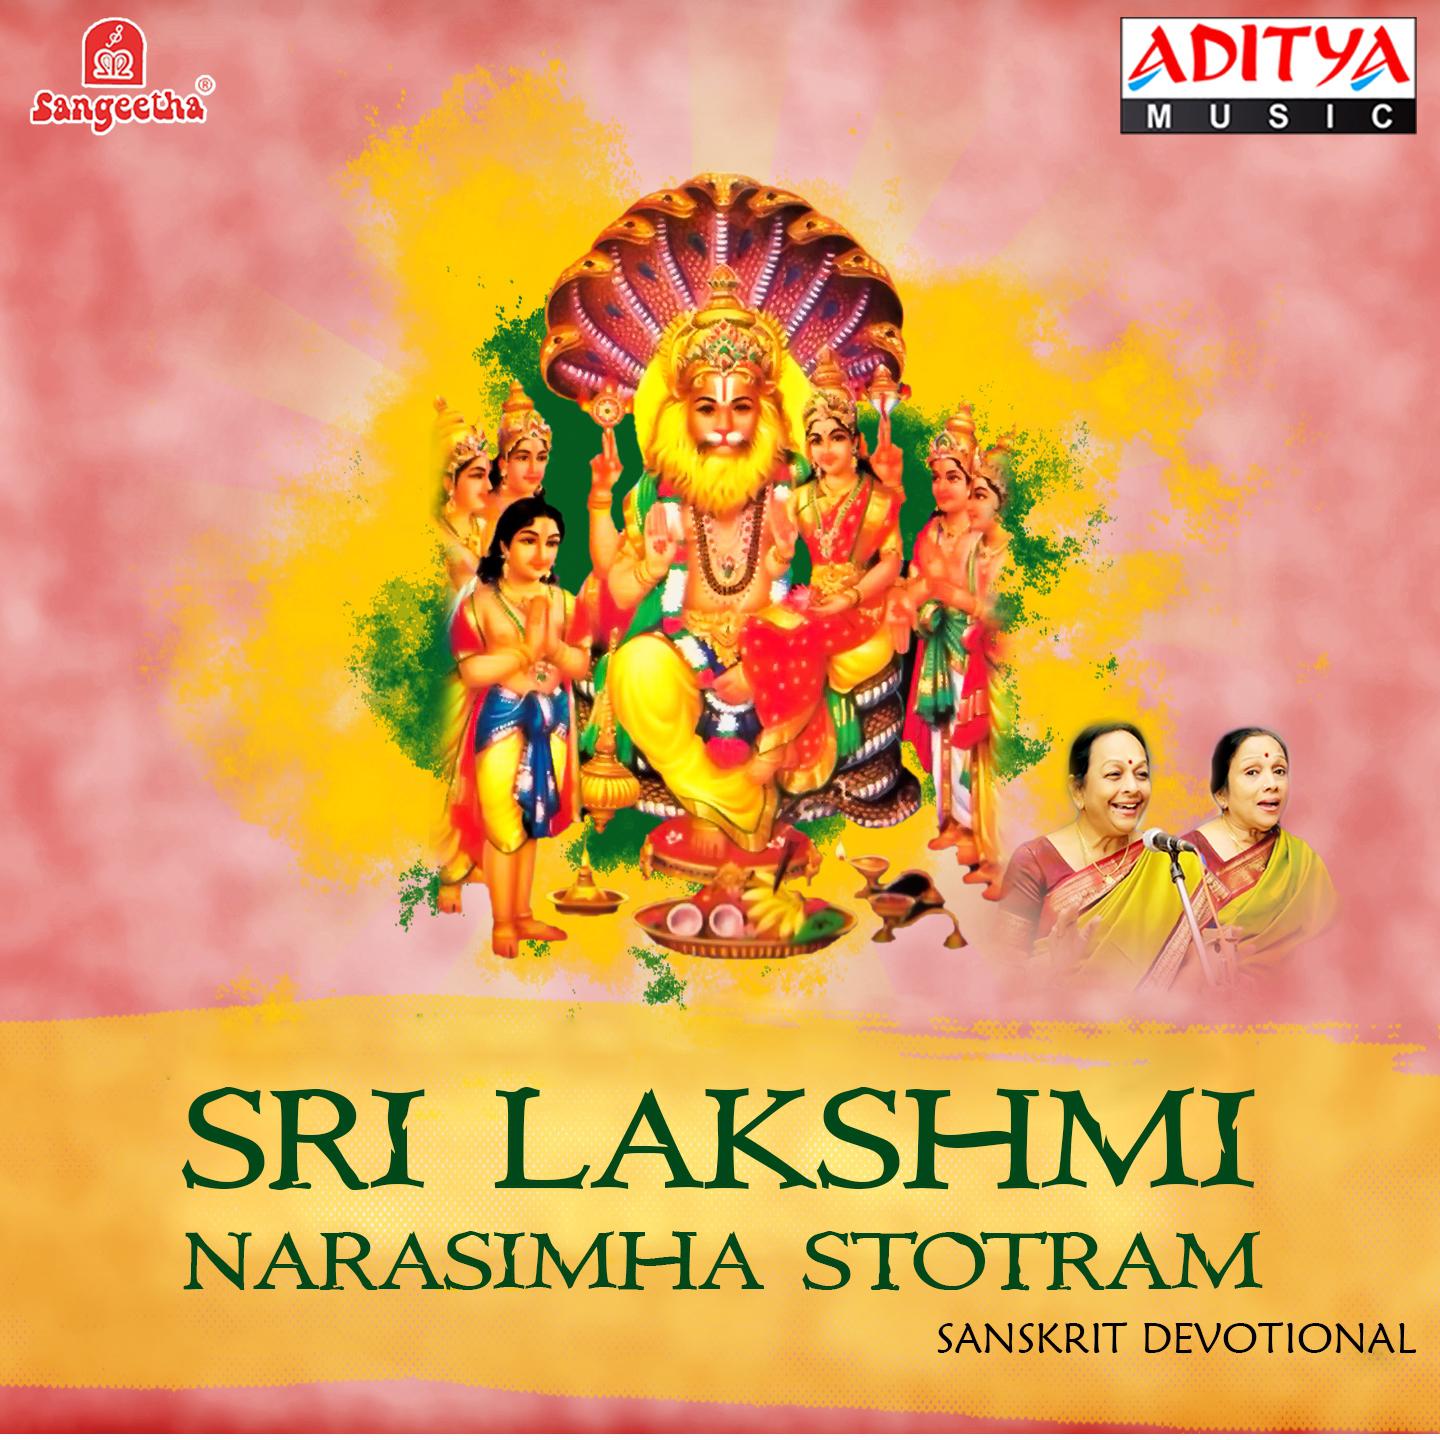 Sri Lakshmi Narasimha Sahasranaama Stotram